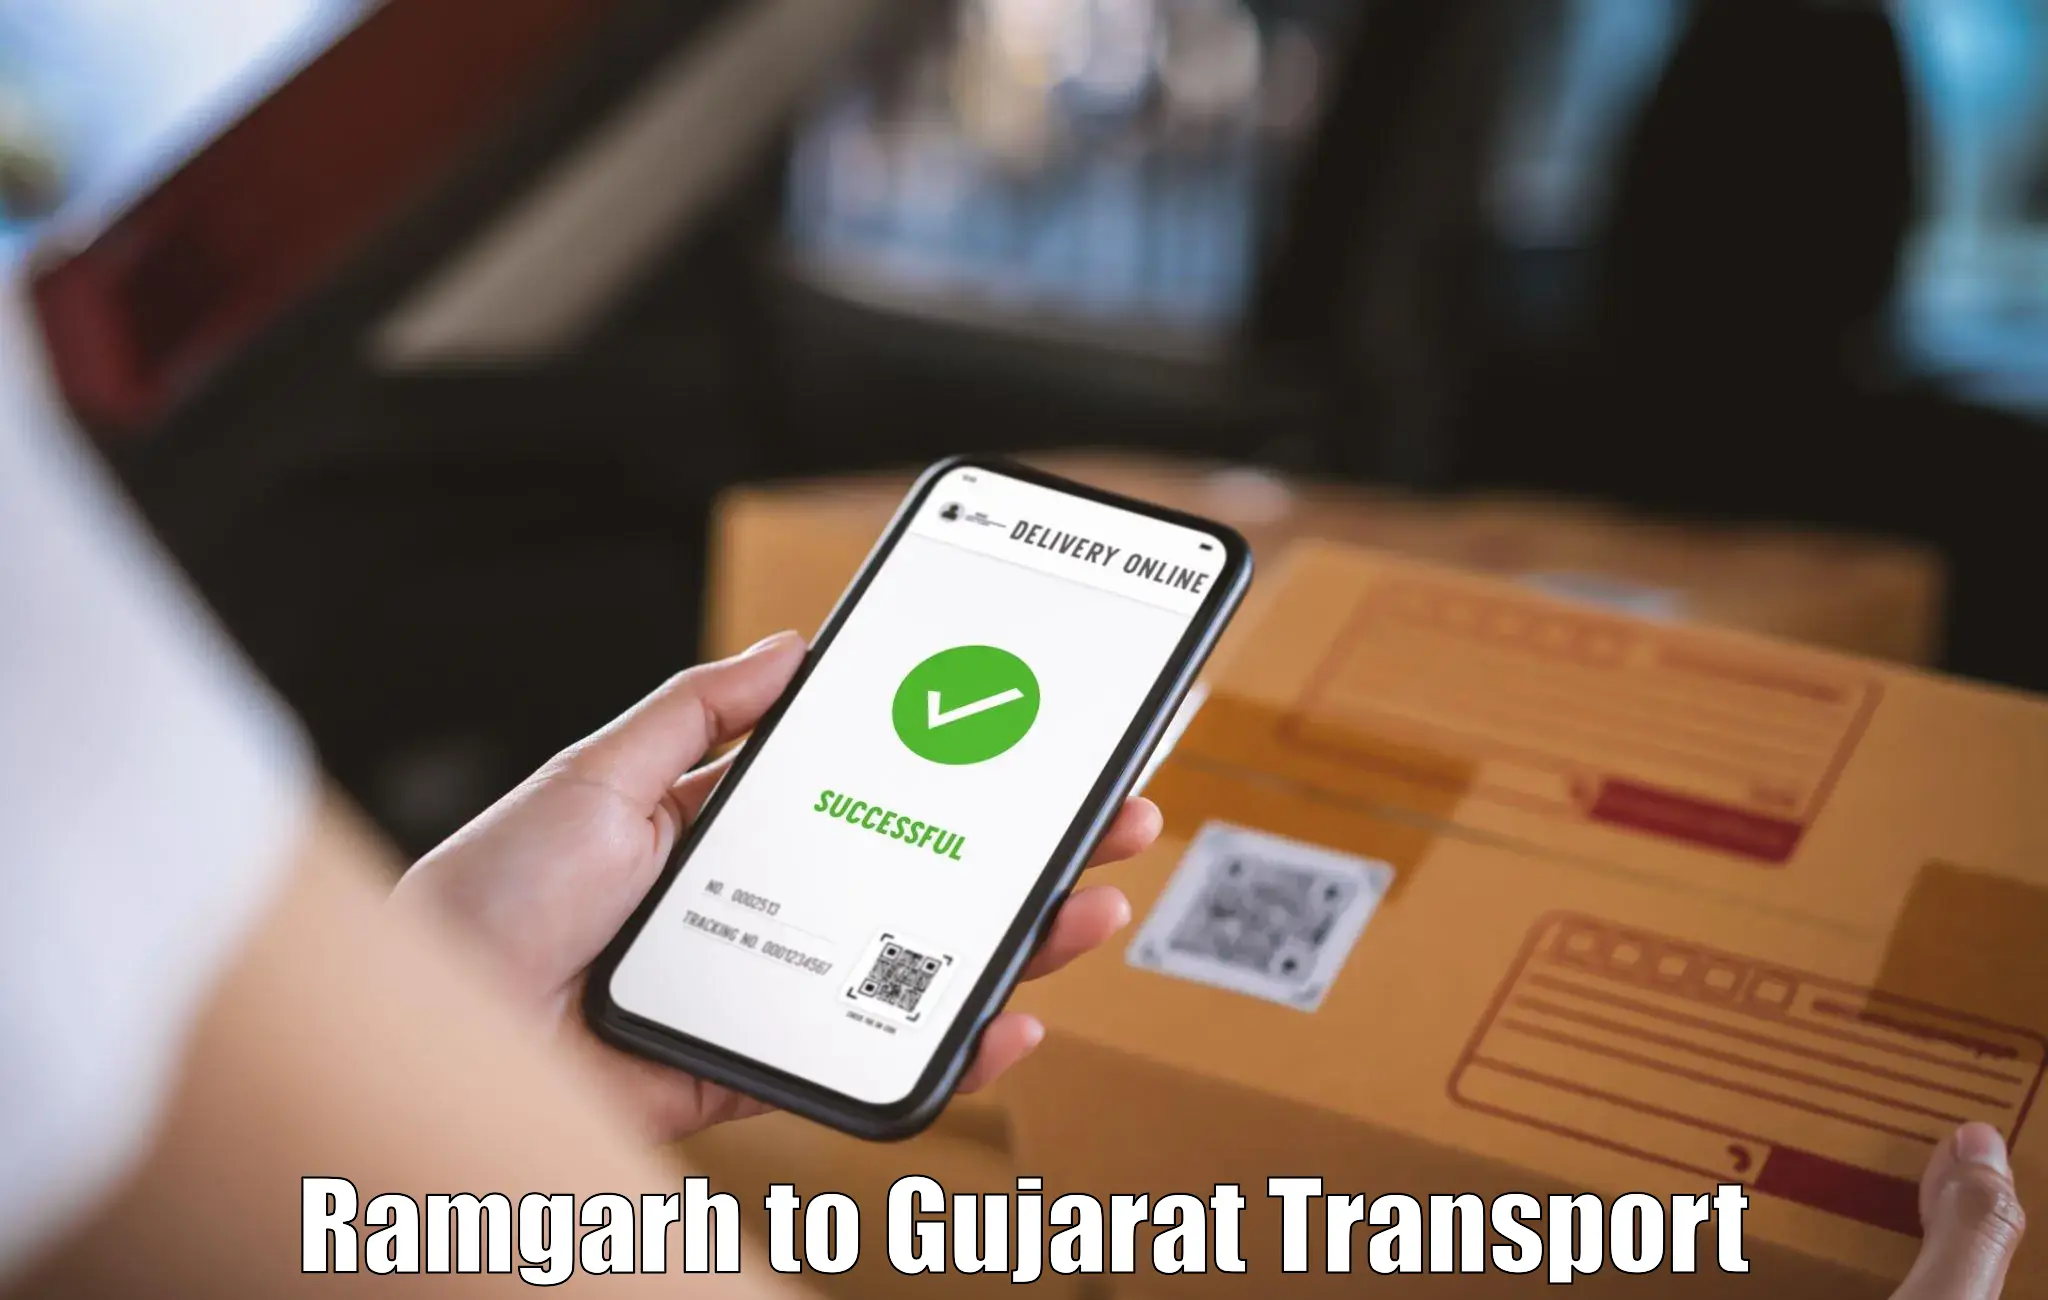 Domestic transport services Ramgarh to Vadnagar